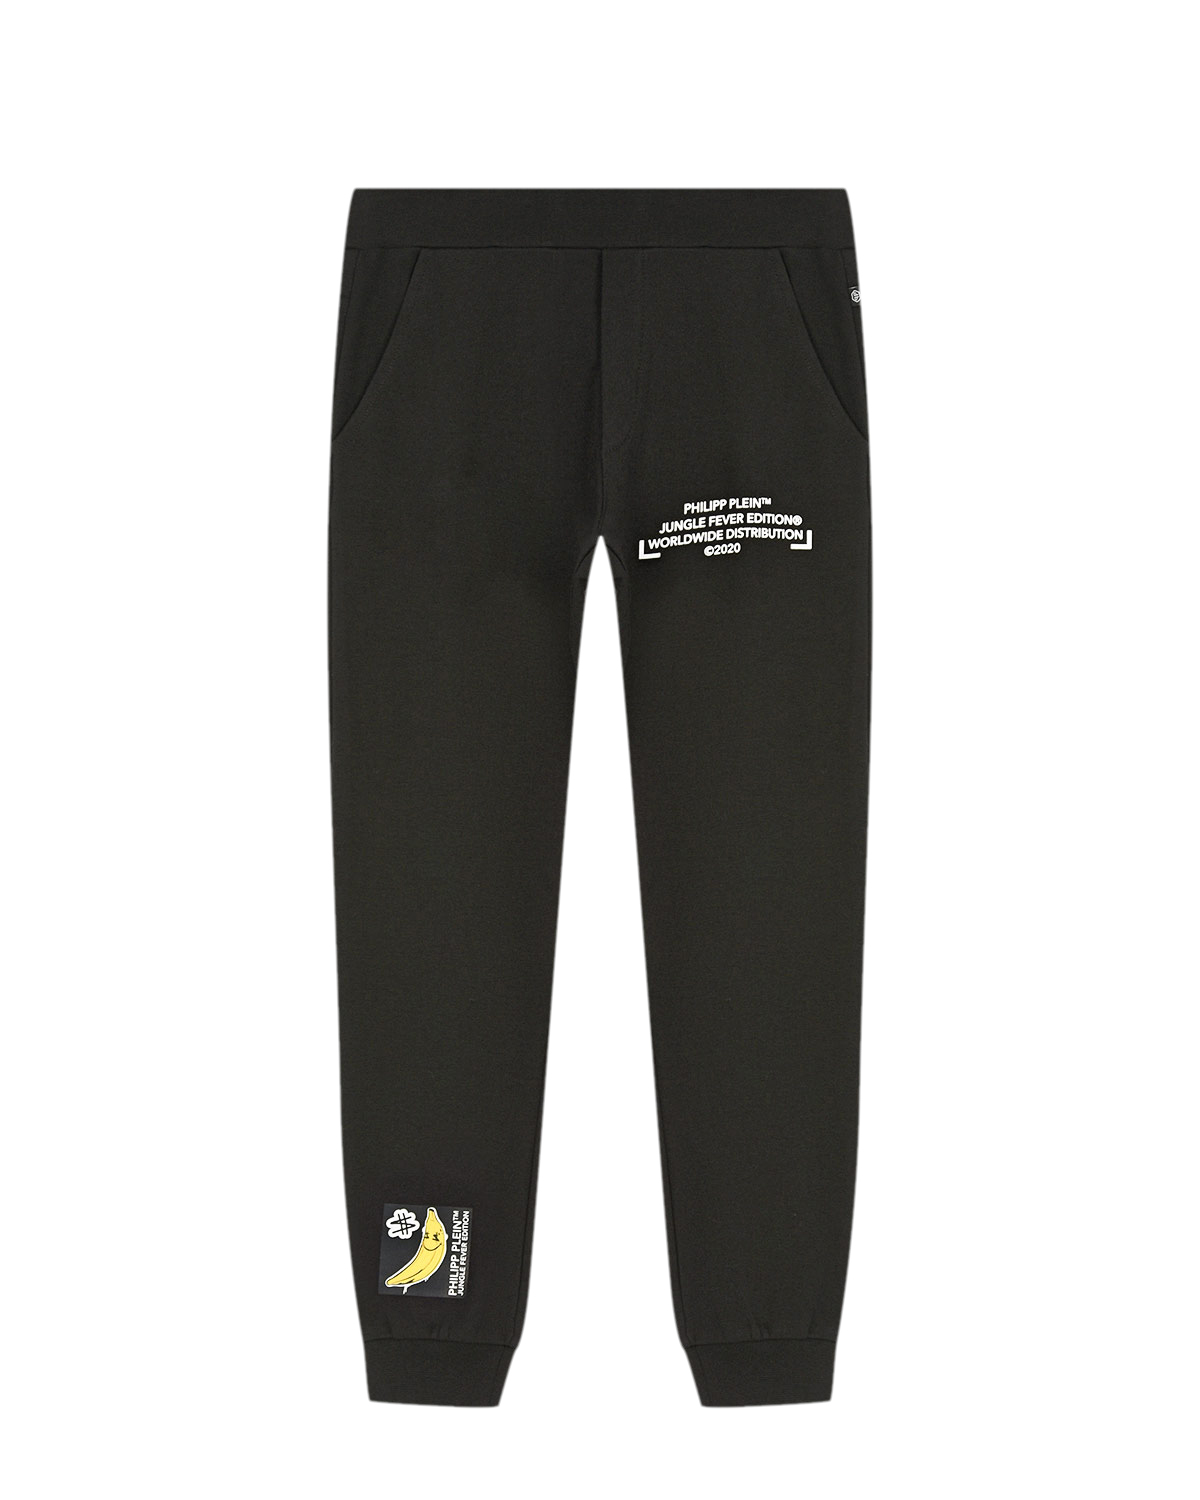 Черные спортивные брюки с принтом "банан" Philipp Plein детские